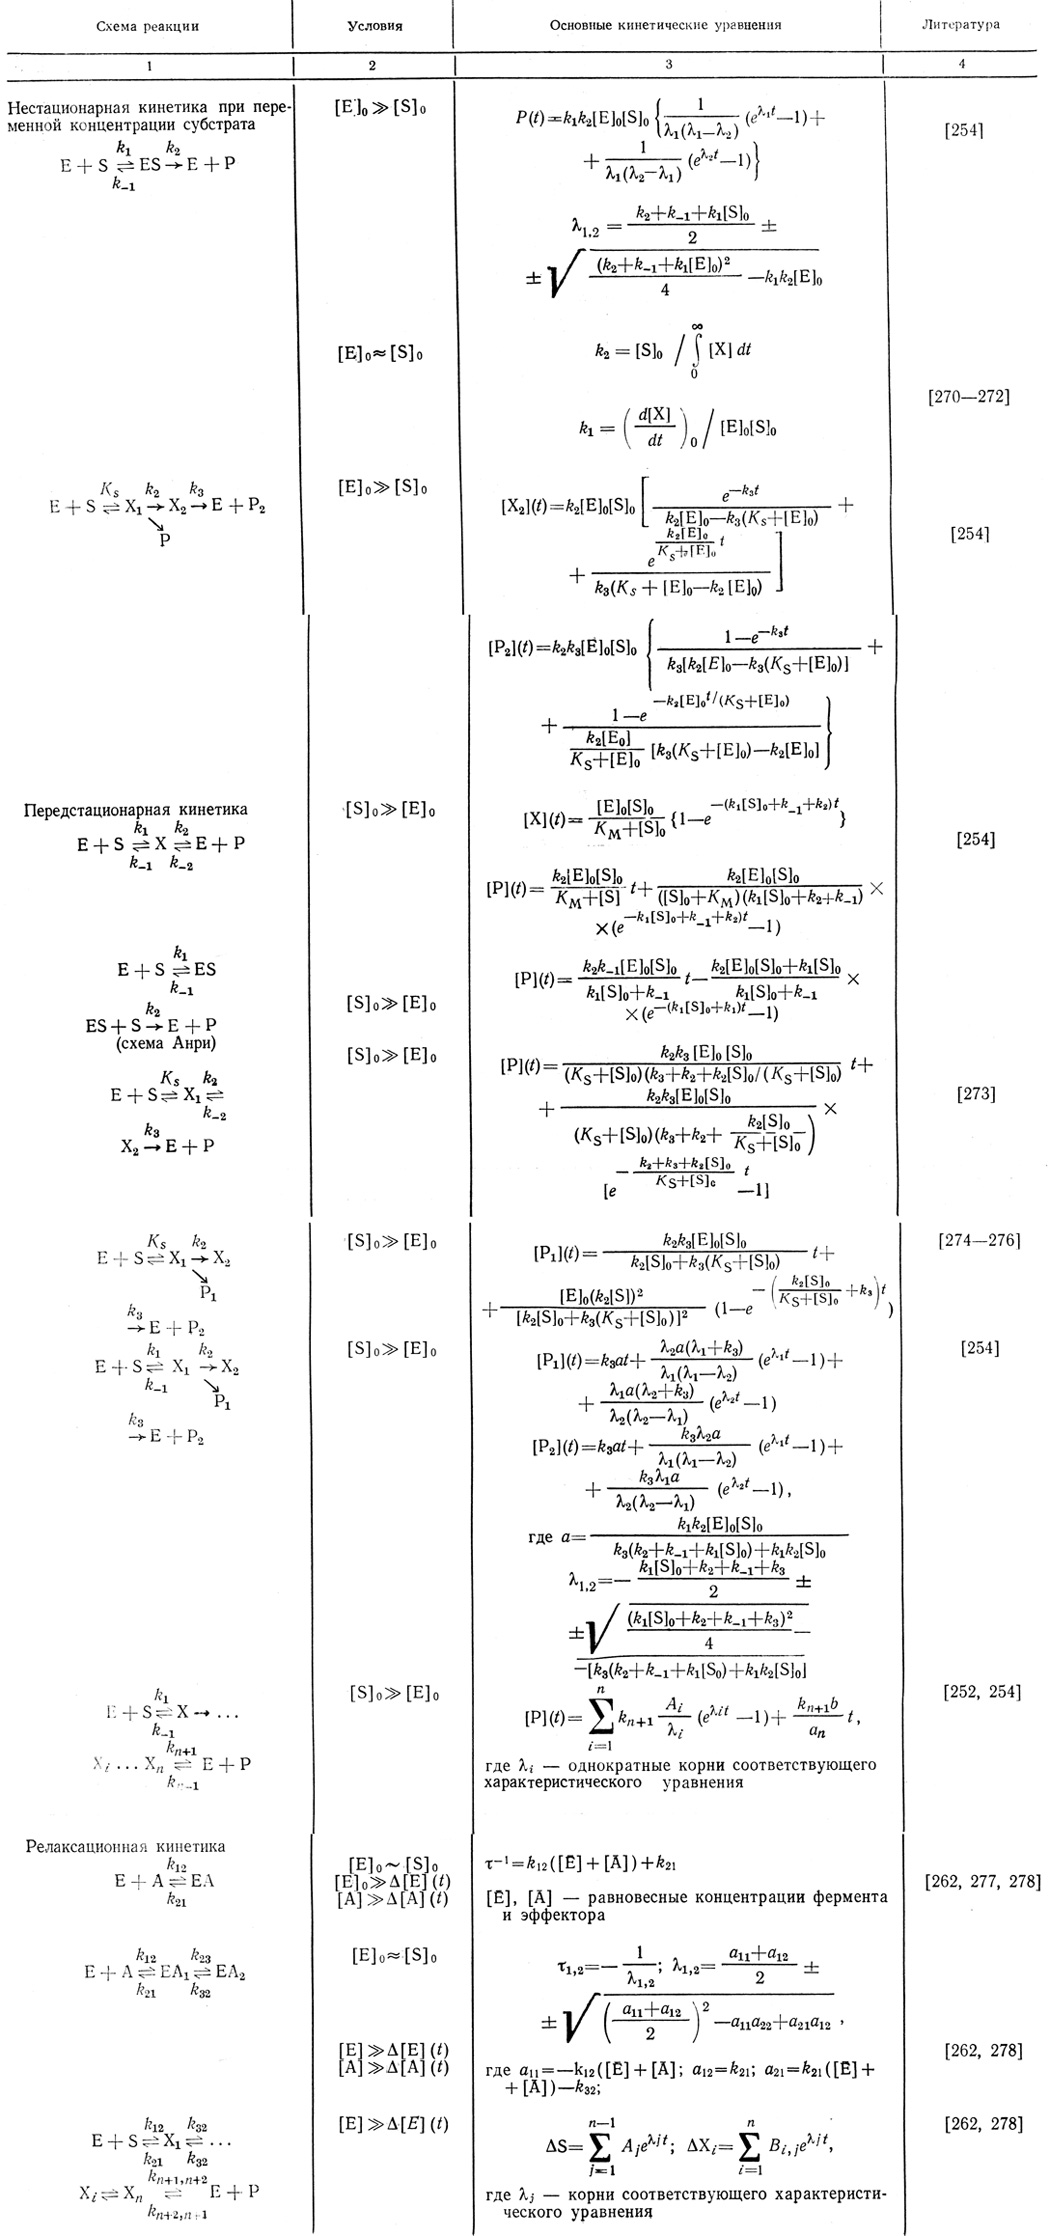 Таблица 15. Основные уравнения нестационарной кинетики ферментативных реакций